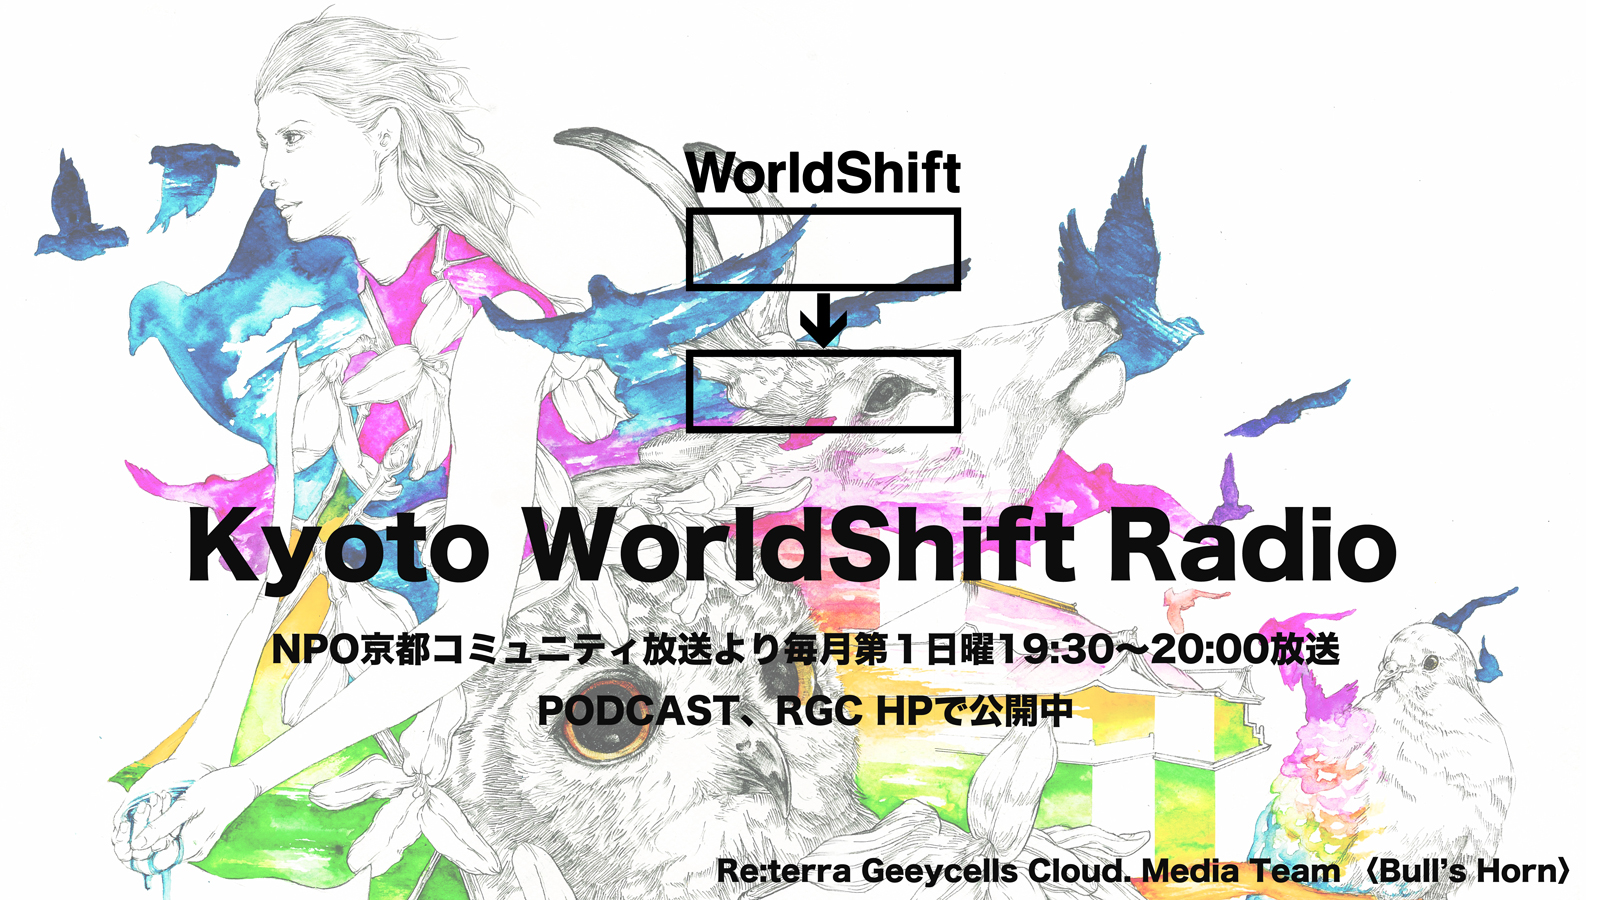 Kyoto WorldShift Radio